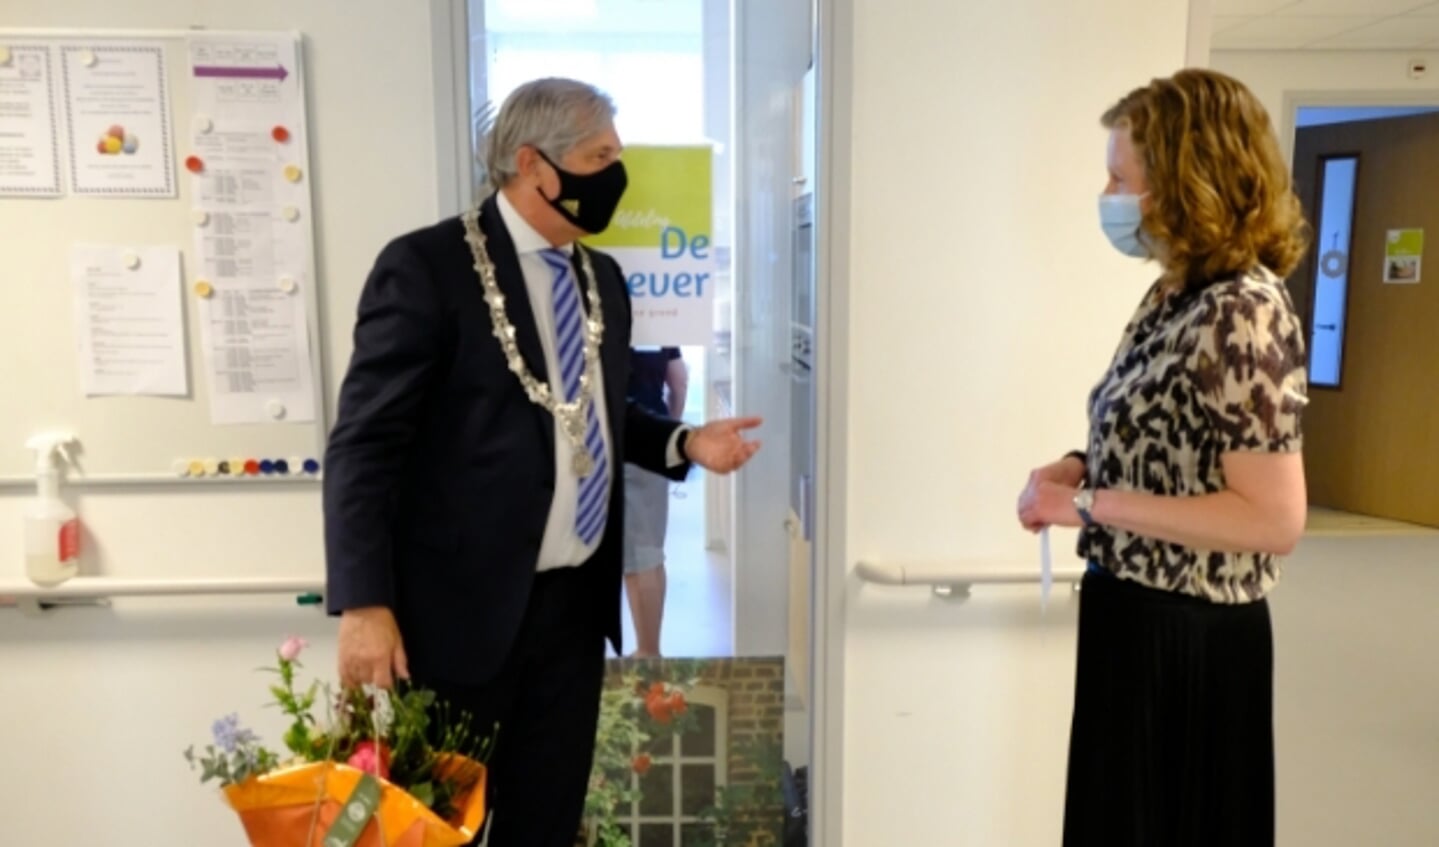 Burgemeester Peter Oskam in gesprek met locatiemanager Marianne de Vries, nadat hij een bos bloemen in ontvangst heeft genomen. 